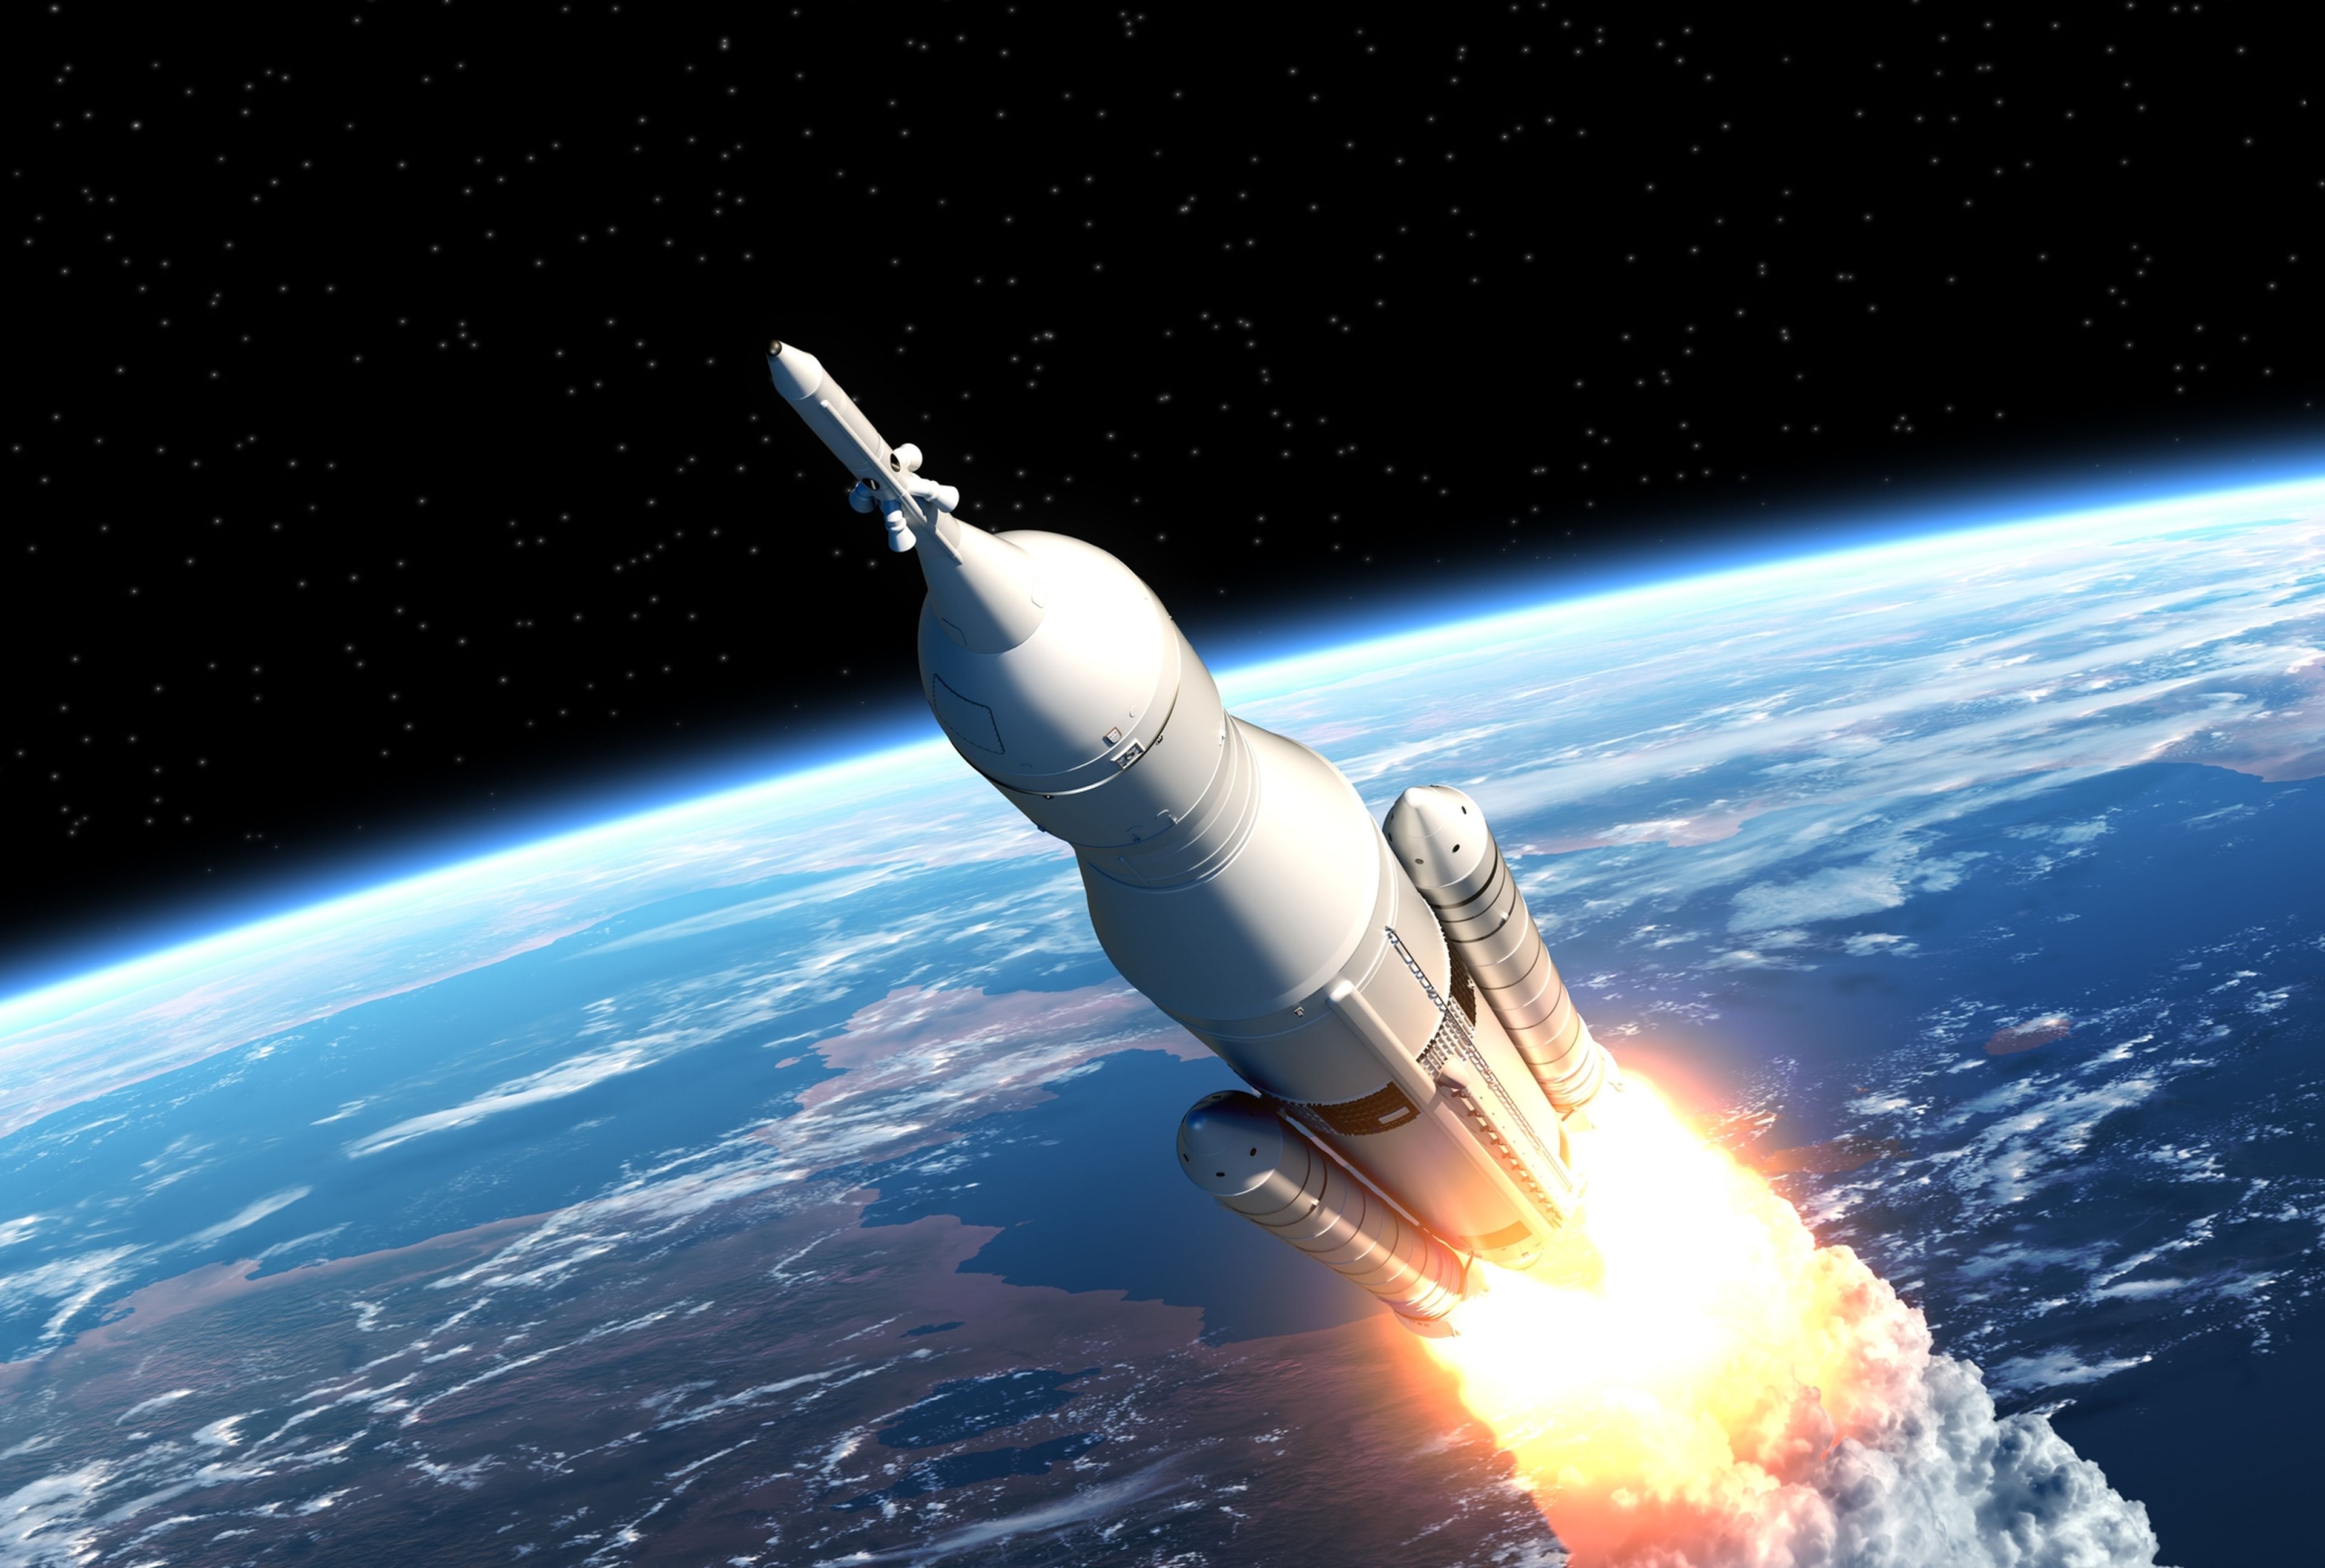 Stardust Space, la empresa española que enviará las cenizas de personas fallecidas al espacio, en cohetes de SpaceX